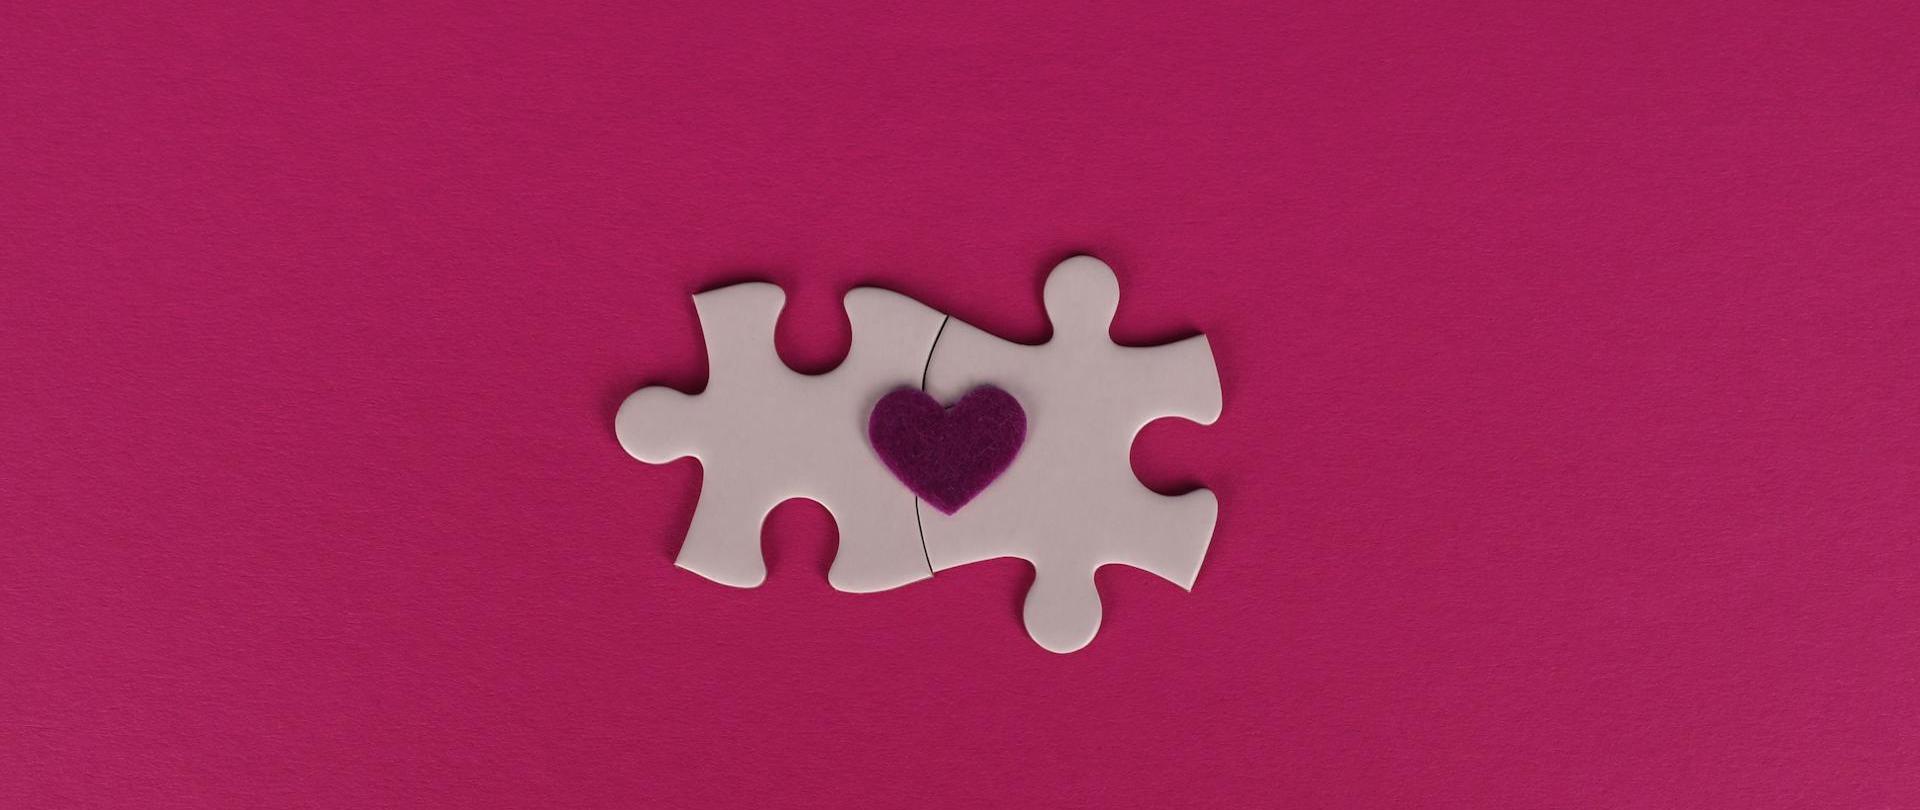 Zdjęcie przedstawia dwa połączone różowe puzzle leżące na rubinowym tle. Na ich wierzchu położone jest małe bordowe serduszko.